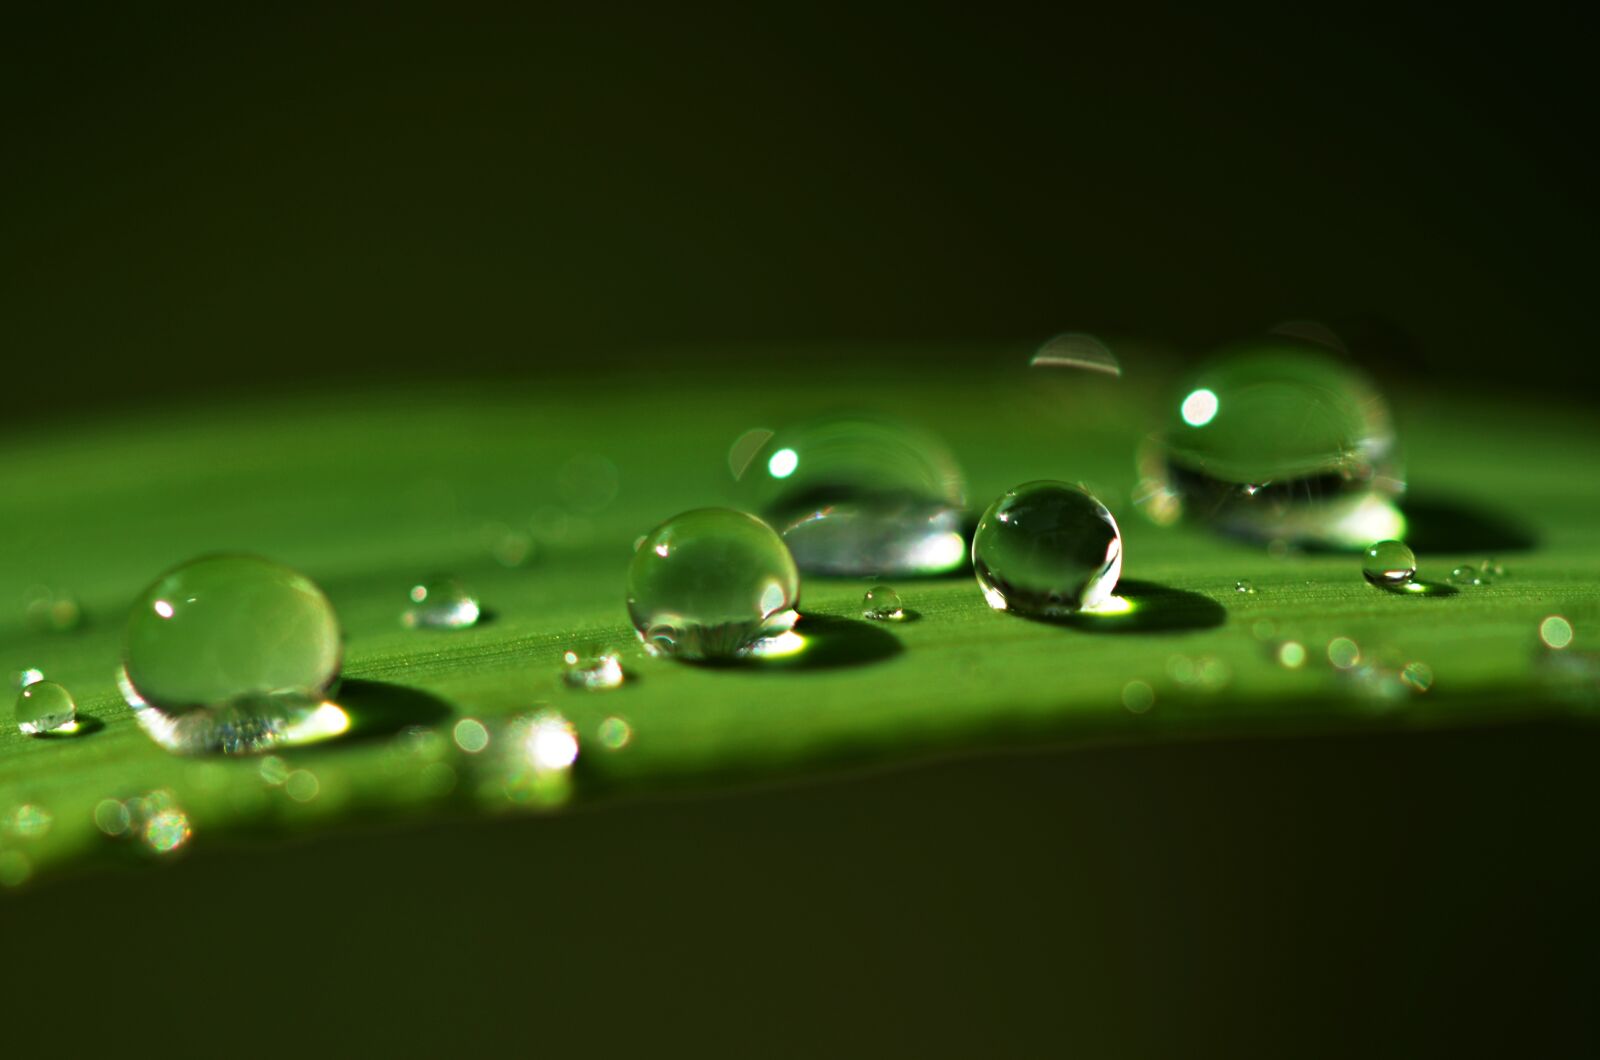 Nikon D5100 sample photo. Dew, drop, water photography